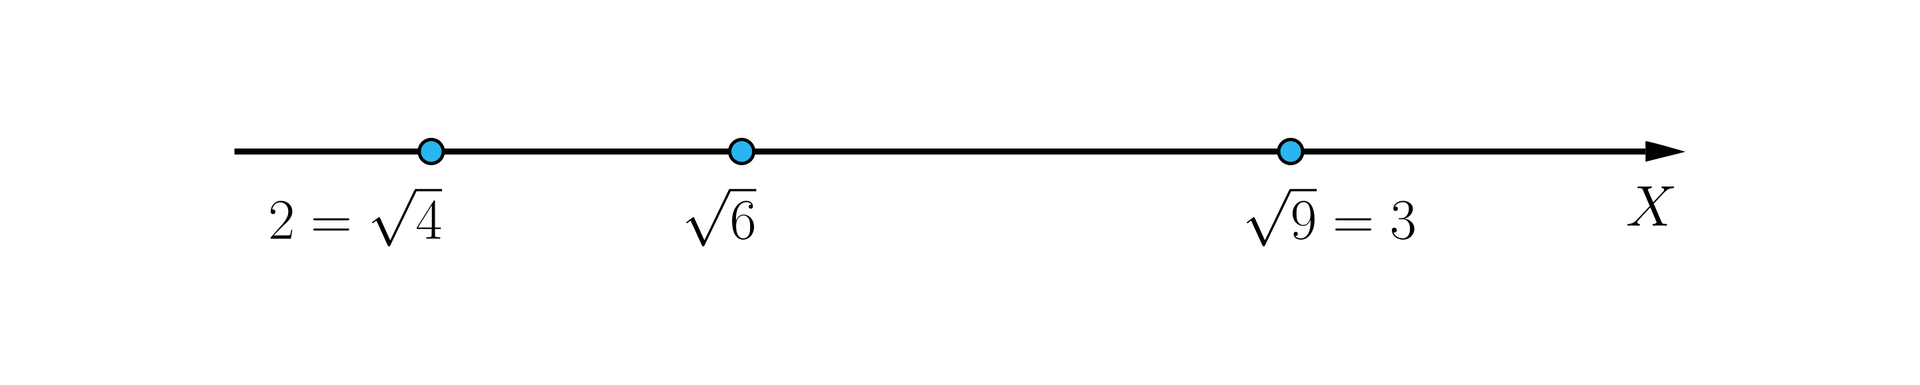 Ilustracja przedstawia poziomą prostą X, na której zaznaczone są trzy punkty kolejno od lewej punkt pierwszy opisany jest jako 2 równa się pierwiastek z czterech, drugi punkt to pierwiastek z sześciu, a trzeci punkt to pierwiastek z dziewięciu równa się 3.